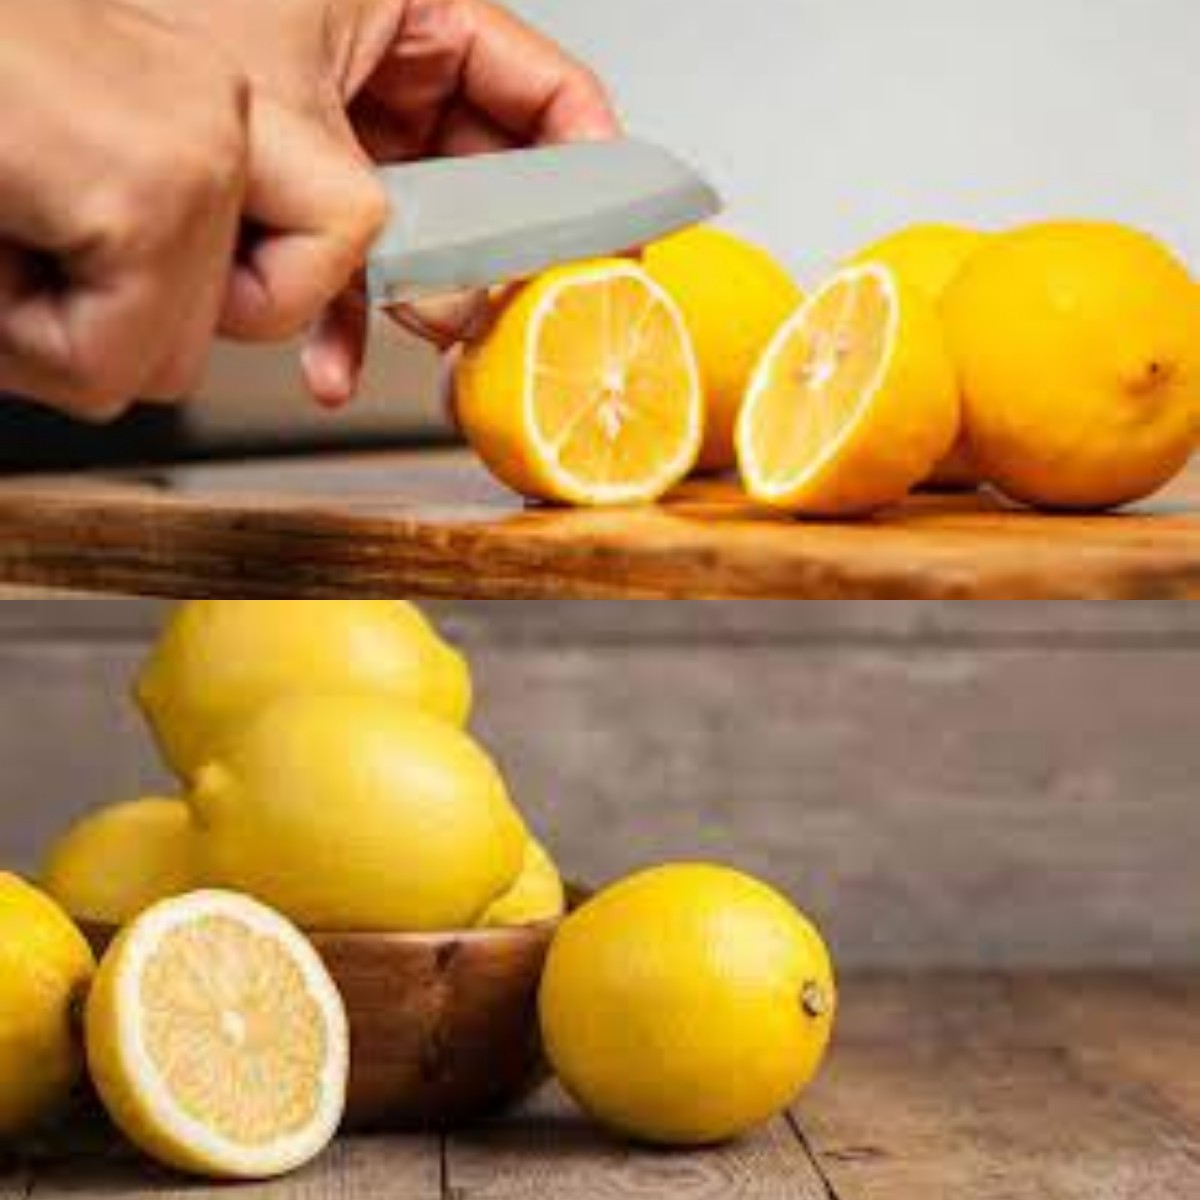 Dibalik Rasa Asamnya! Inilah Sederet Manfaat Buah Lemon yang Bagus untuk Jaga Kesehatan 